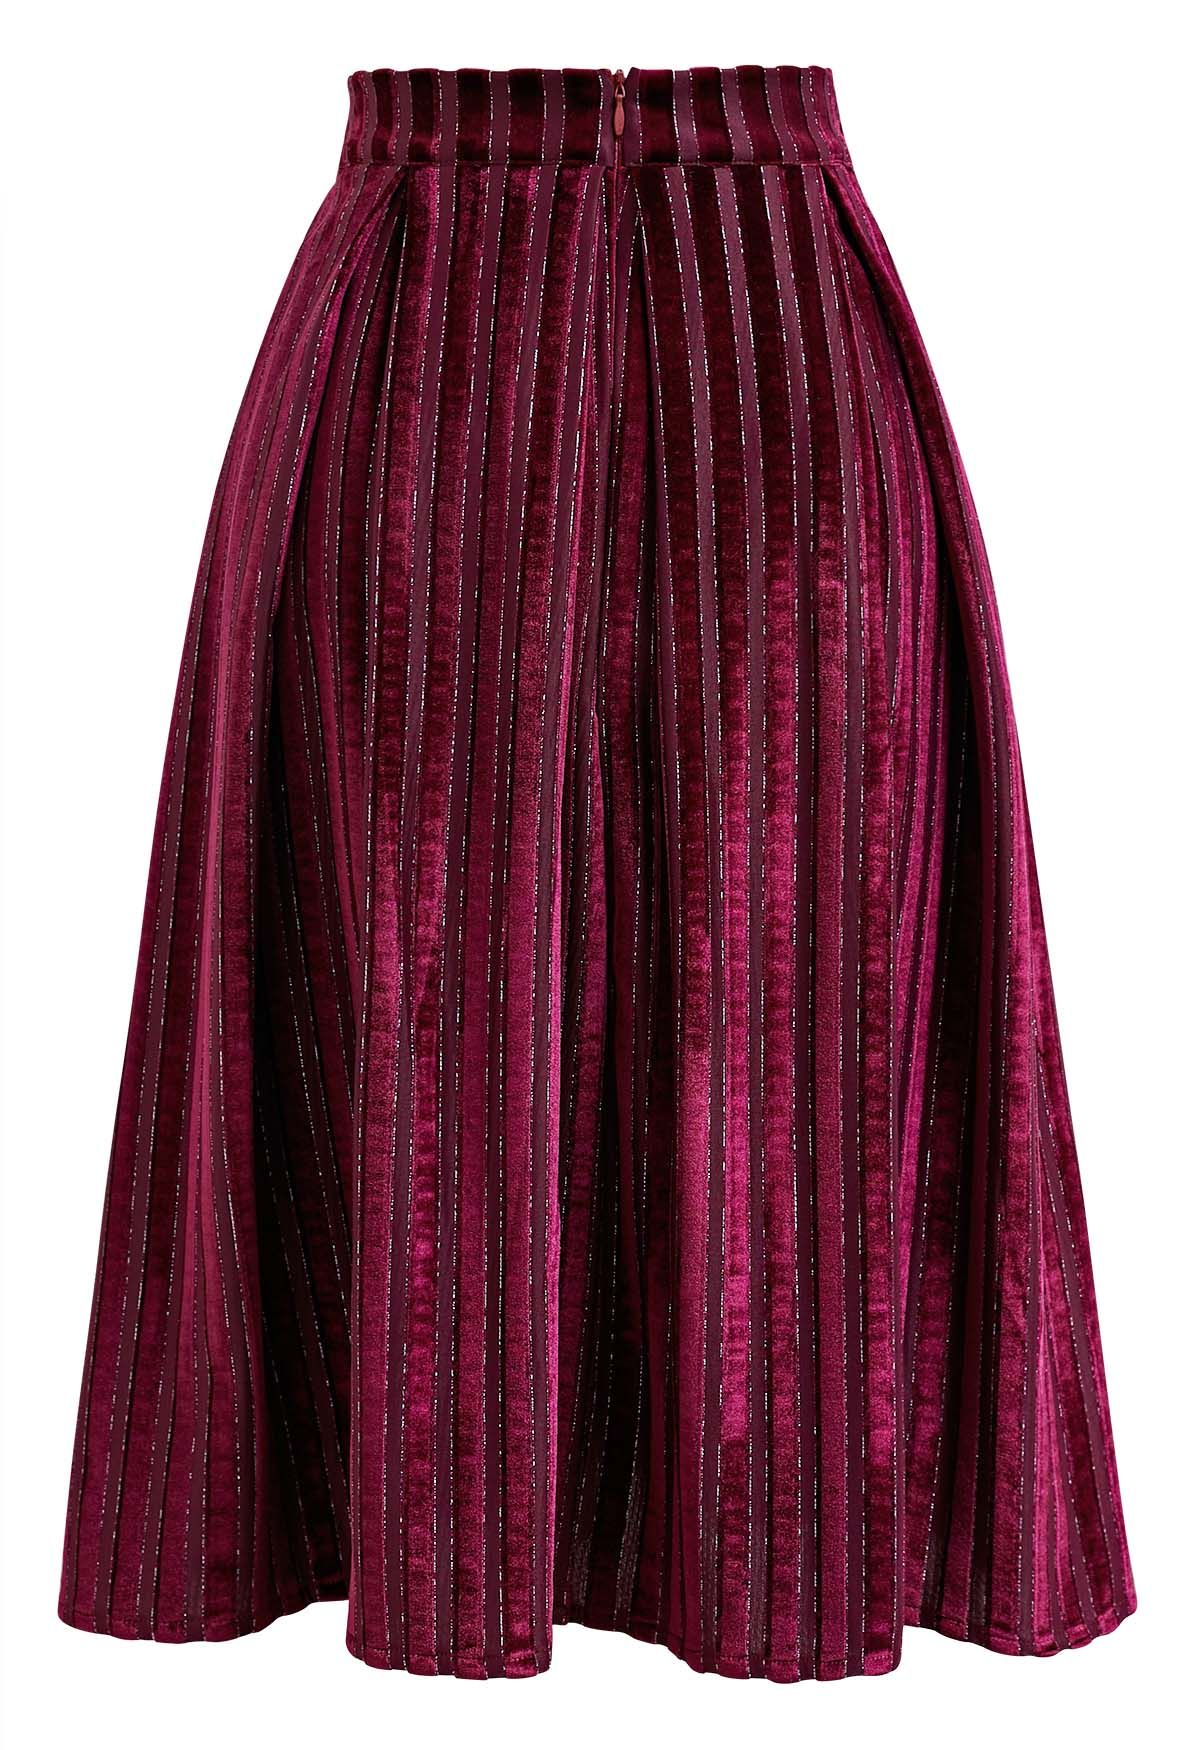 Shimmer Striped Pleated Velvet Midi Skirt in Burgundy - Retro, Indie ...